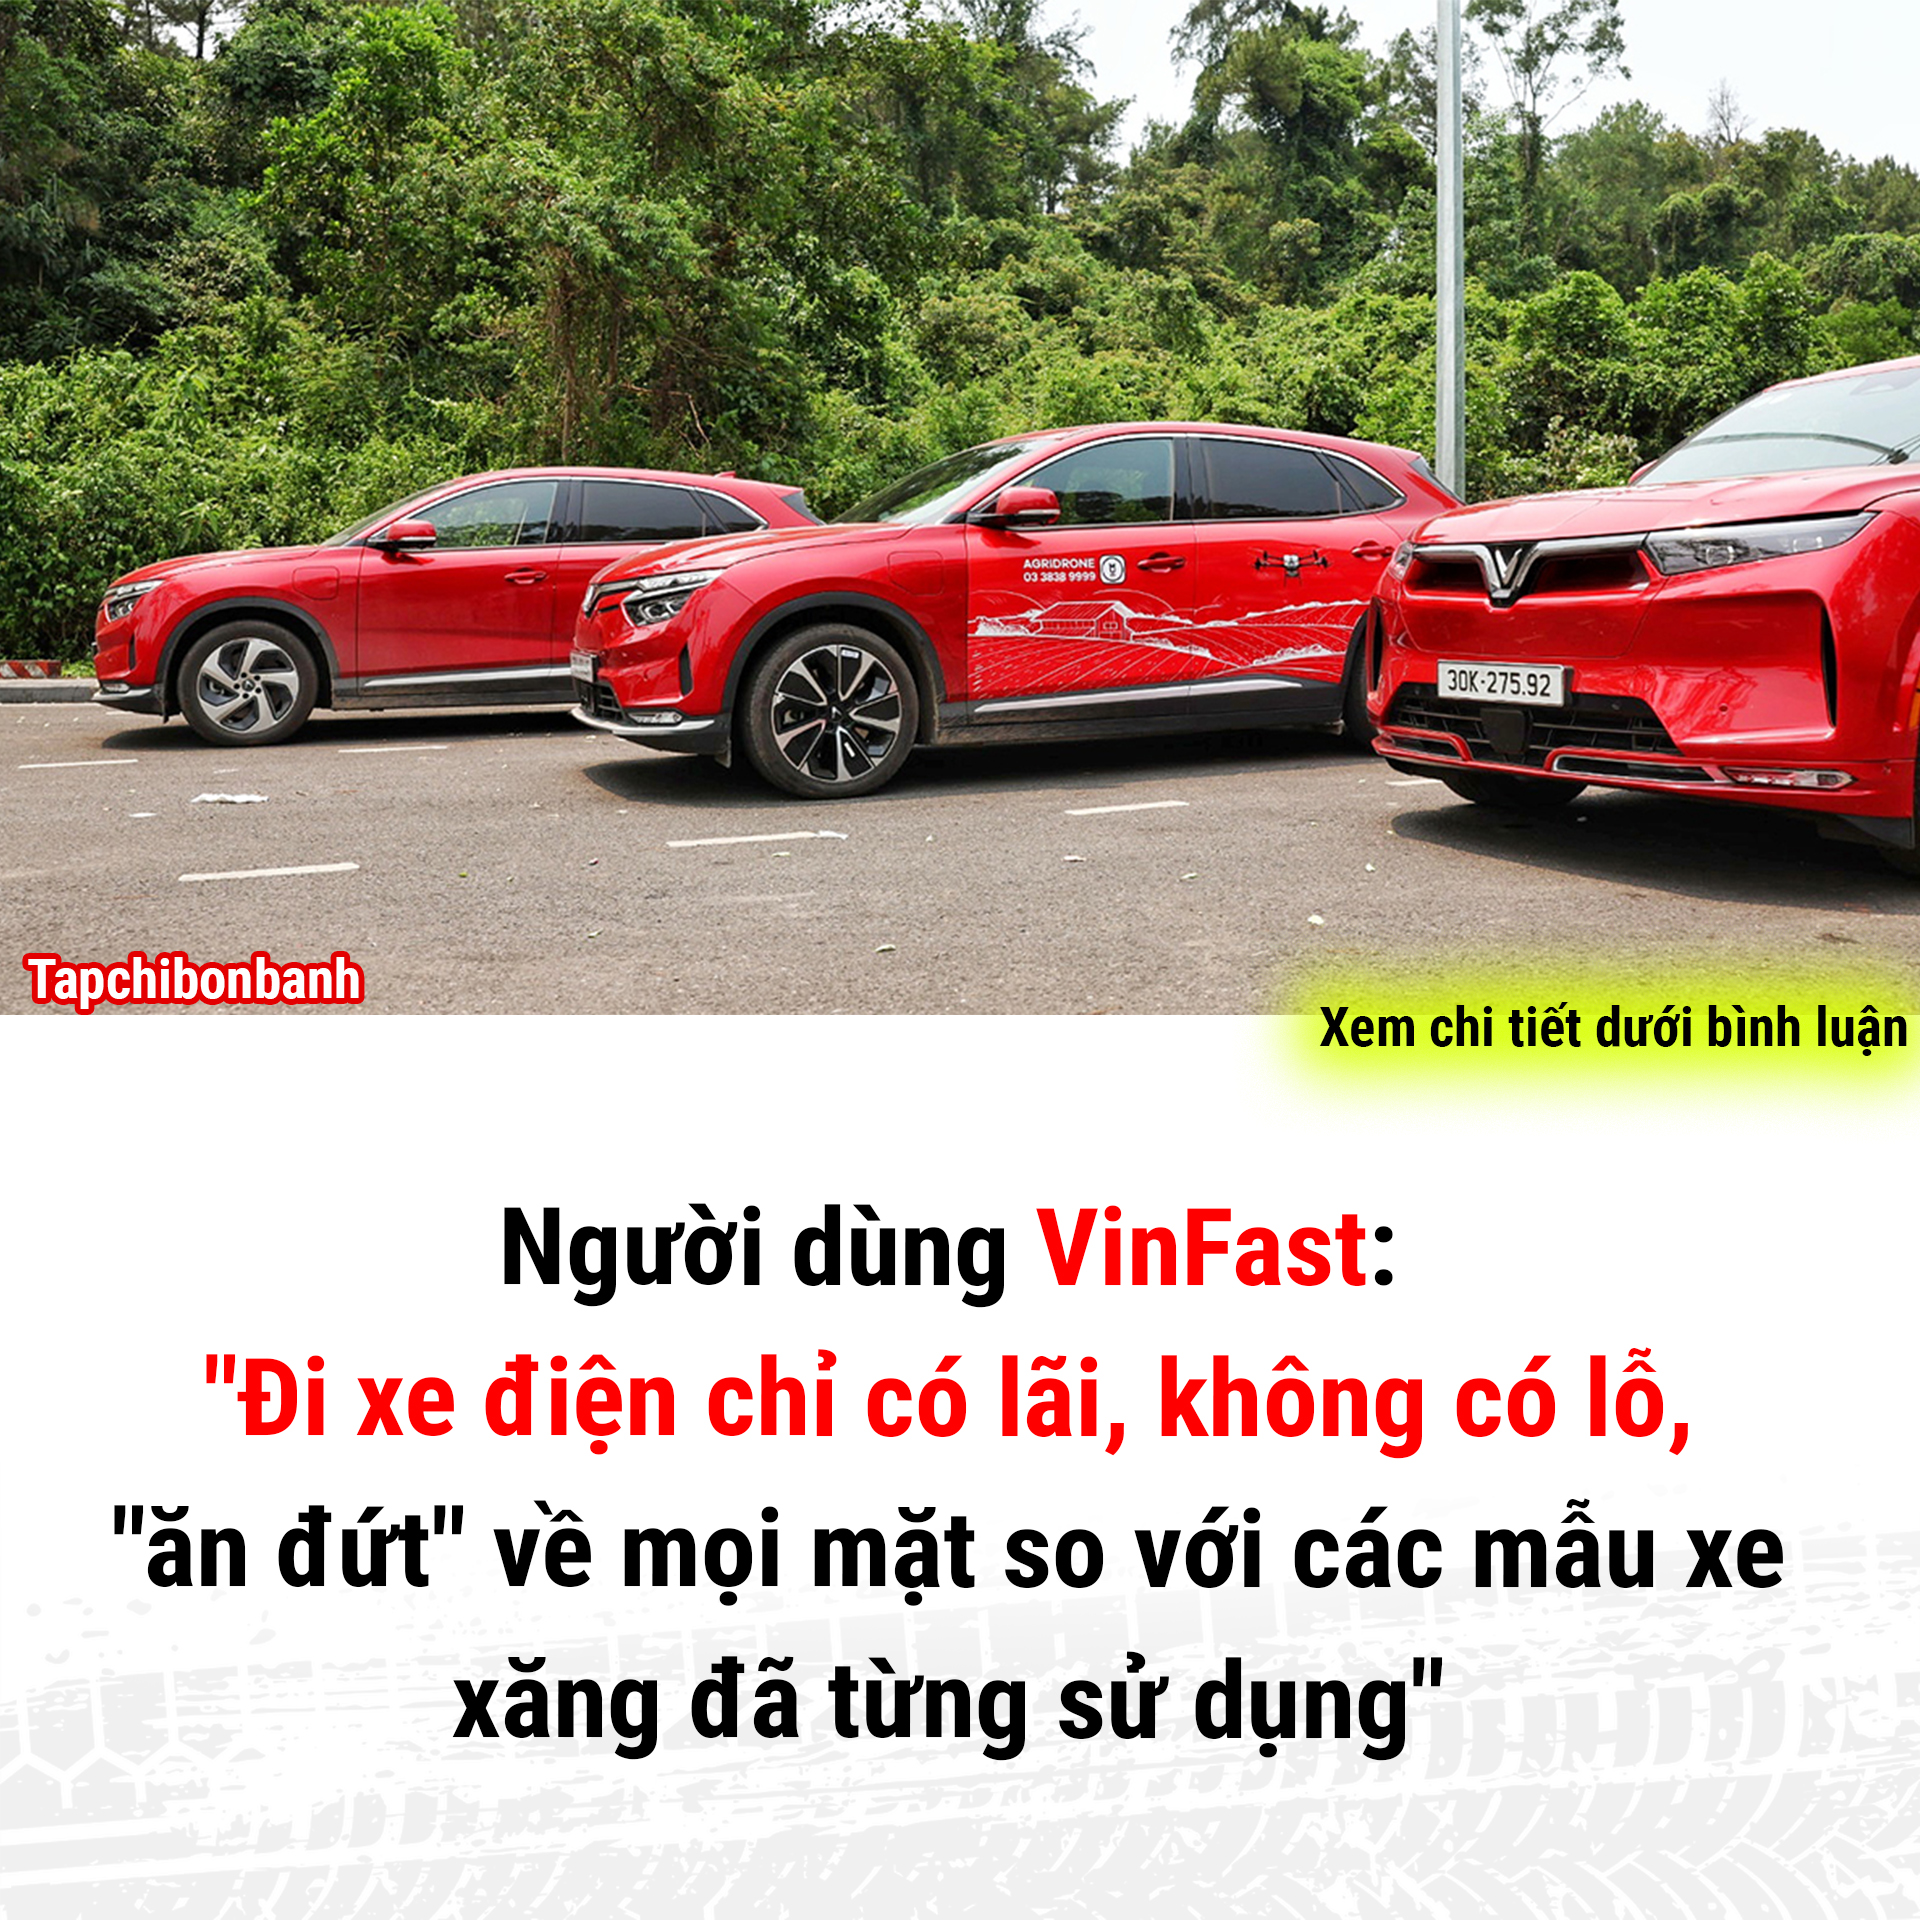 di xe dien vinfast chi co lai - Người dùng VinFast: 'Đi xe điện chỉ có lãi, không có lỗ'